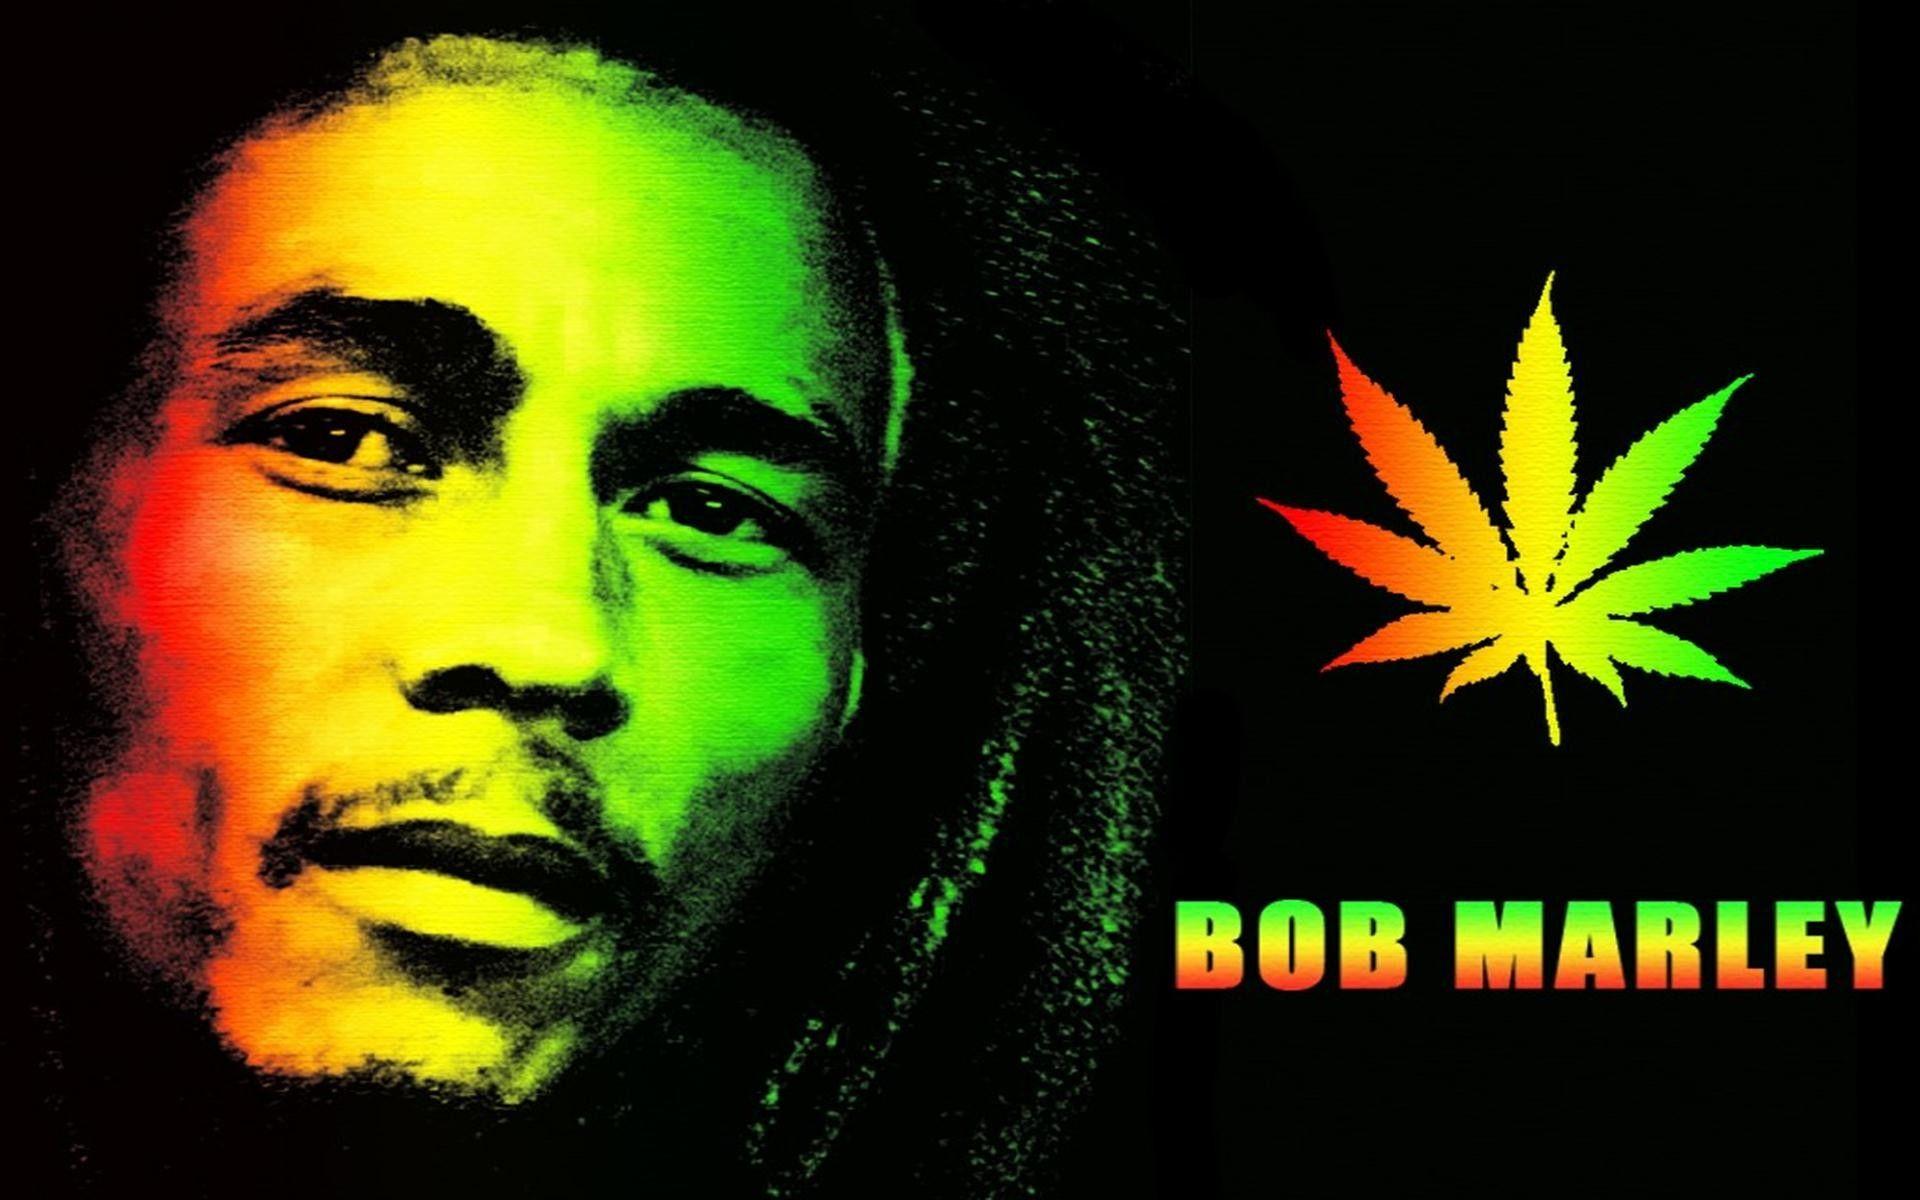 Free Bob Marley phone wallpaper by mops801  Bob marley pictures Bob marley  Image bob marley